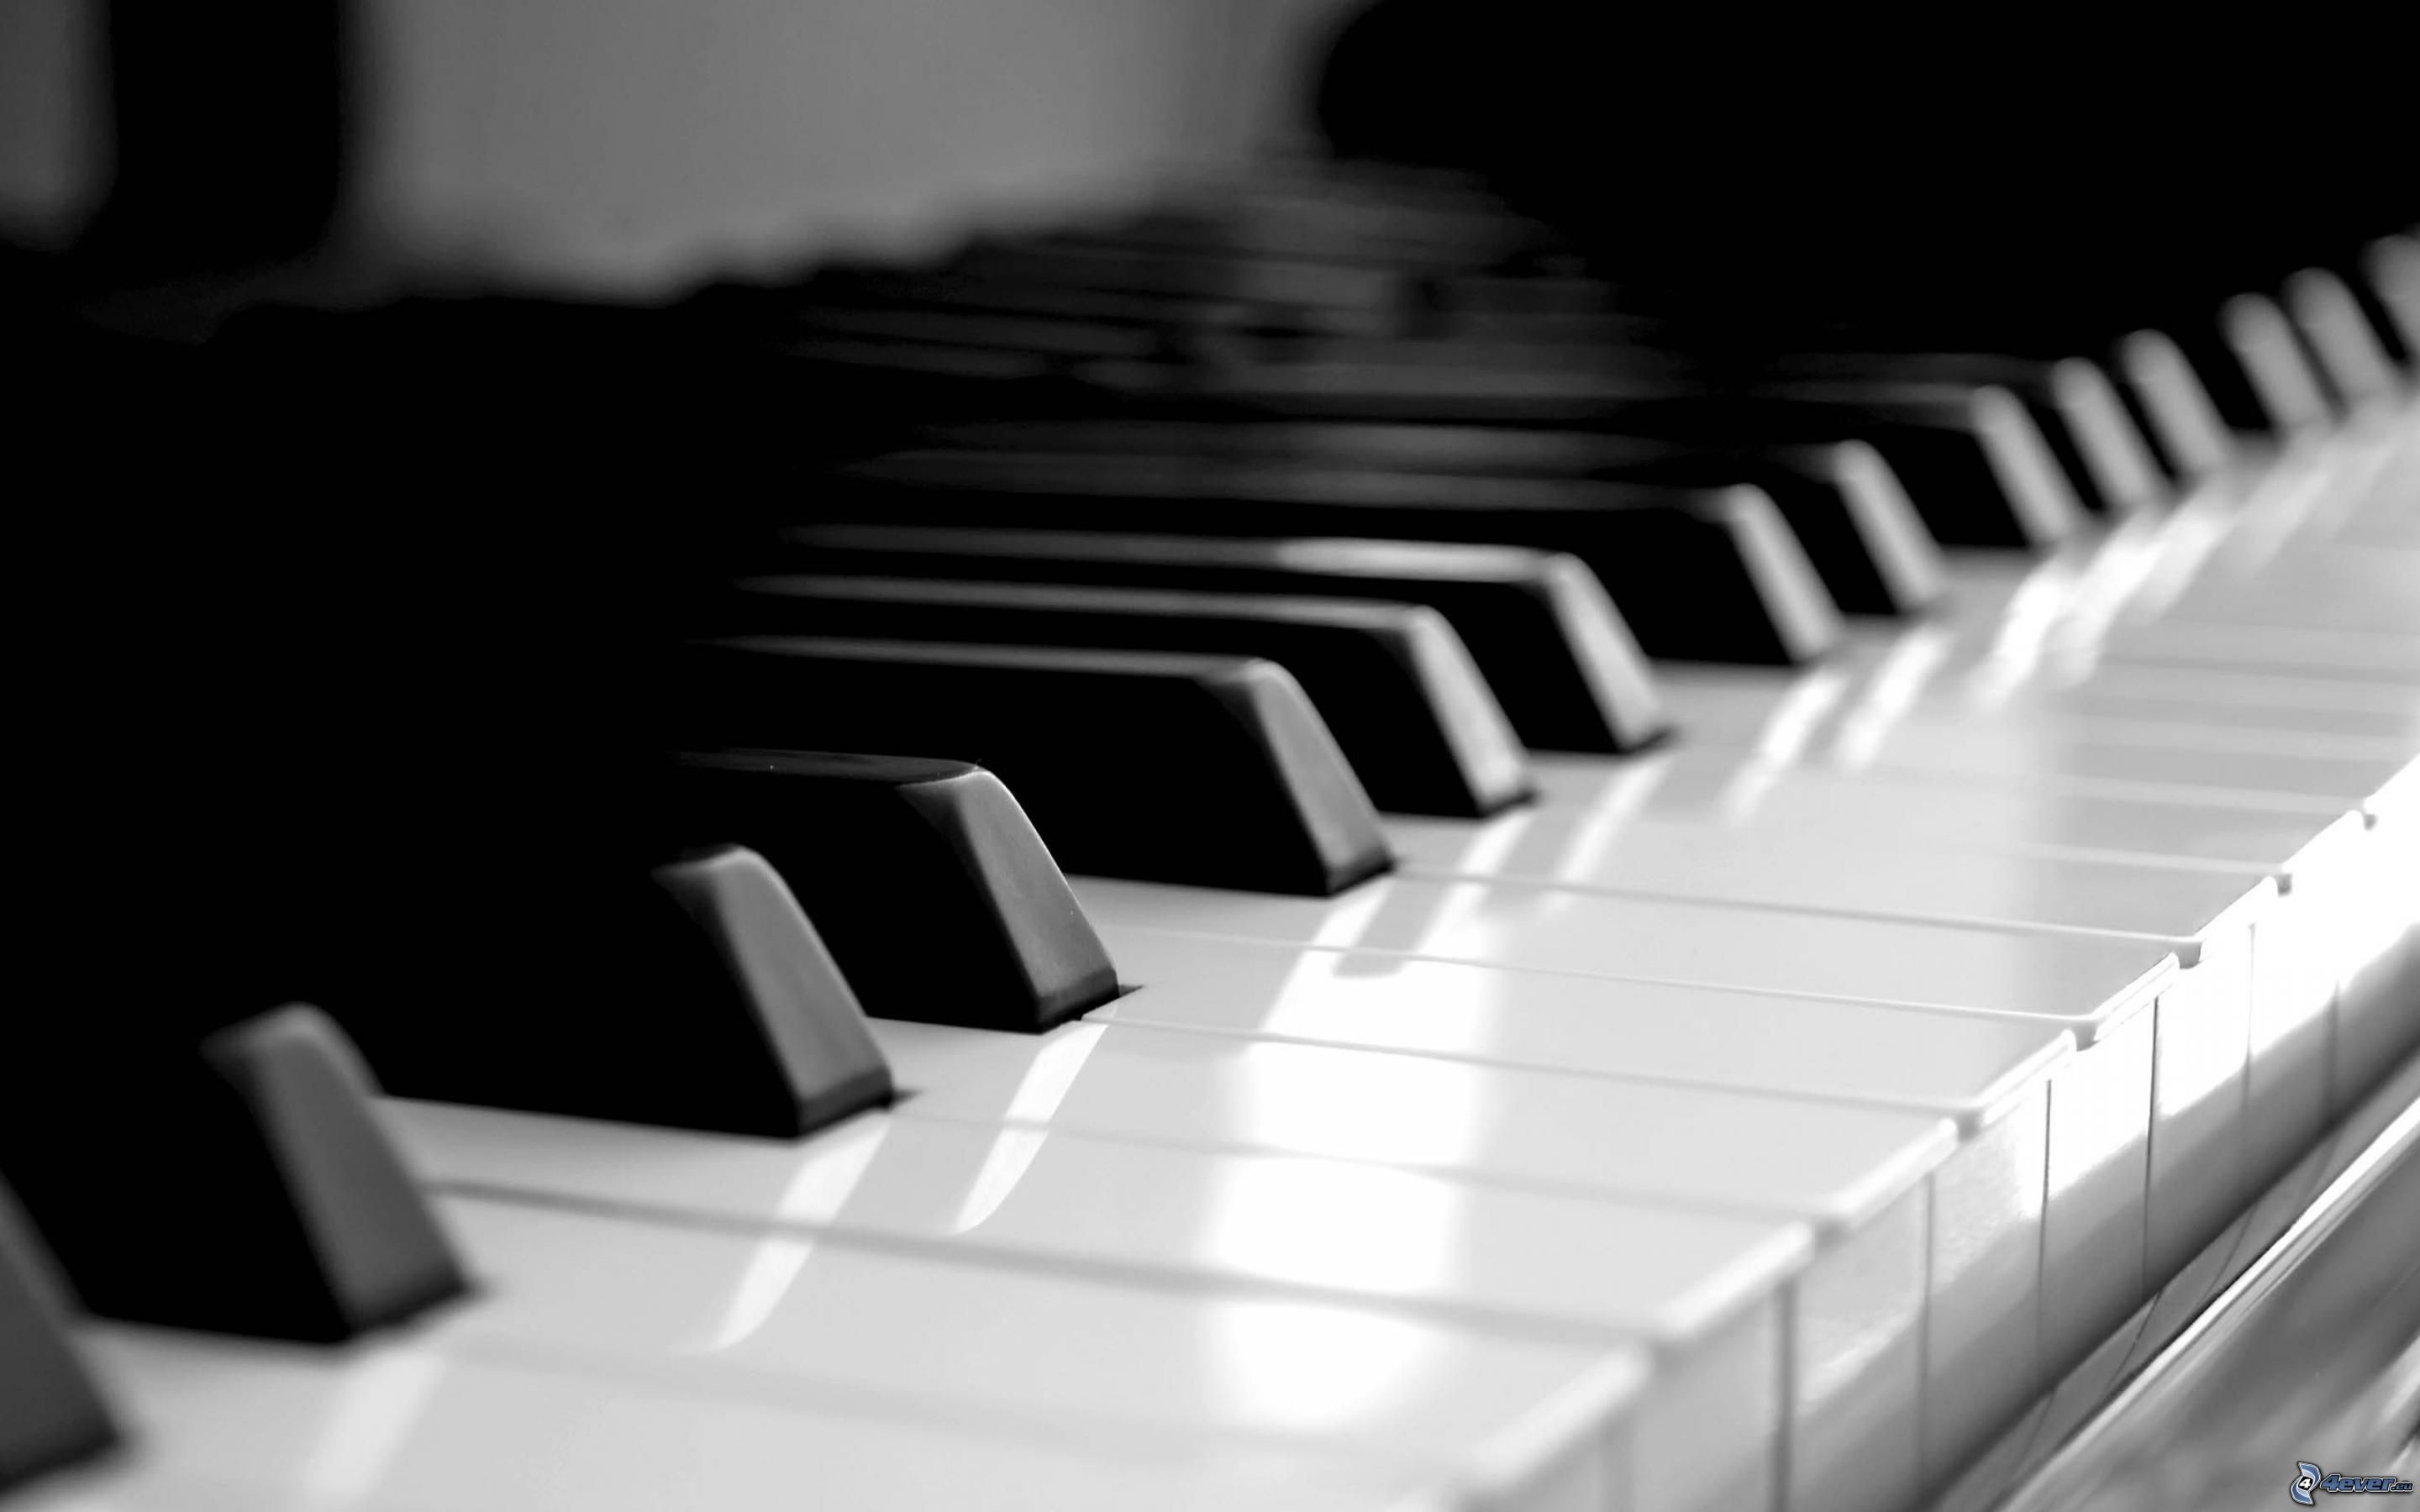 Aulas de piano - Aulas de Piano em Oeiras e Carcavelos